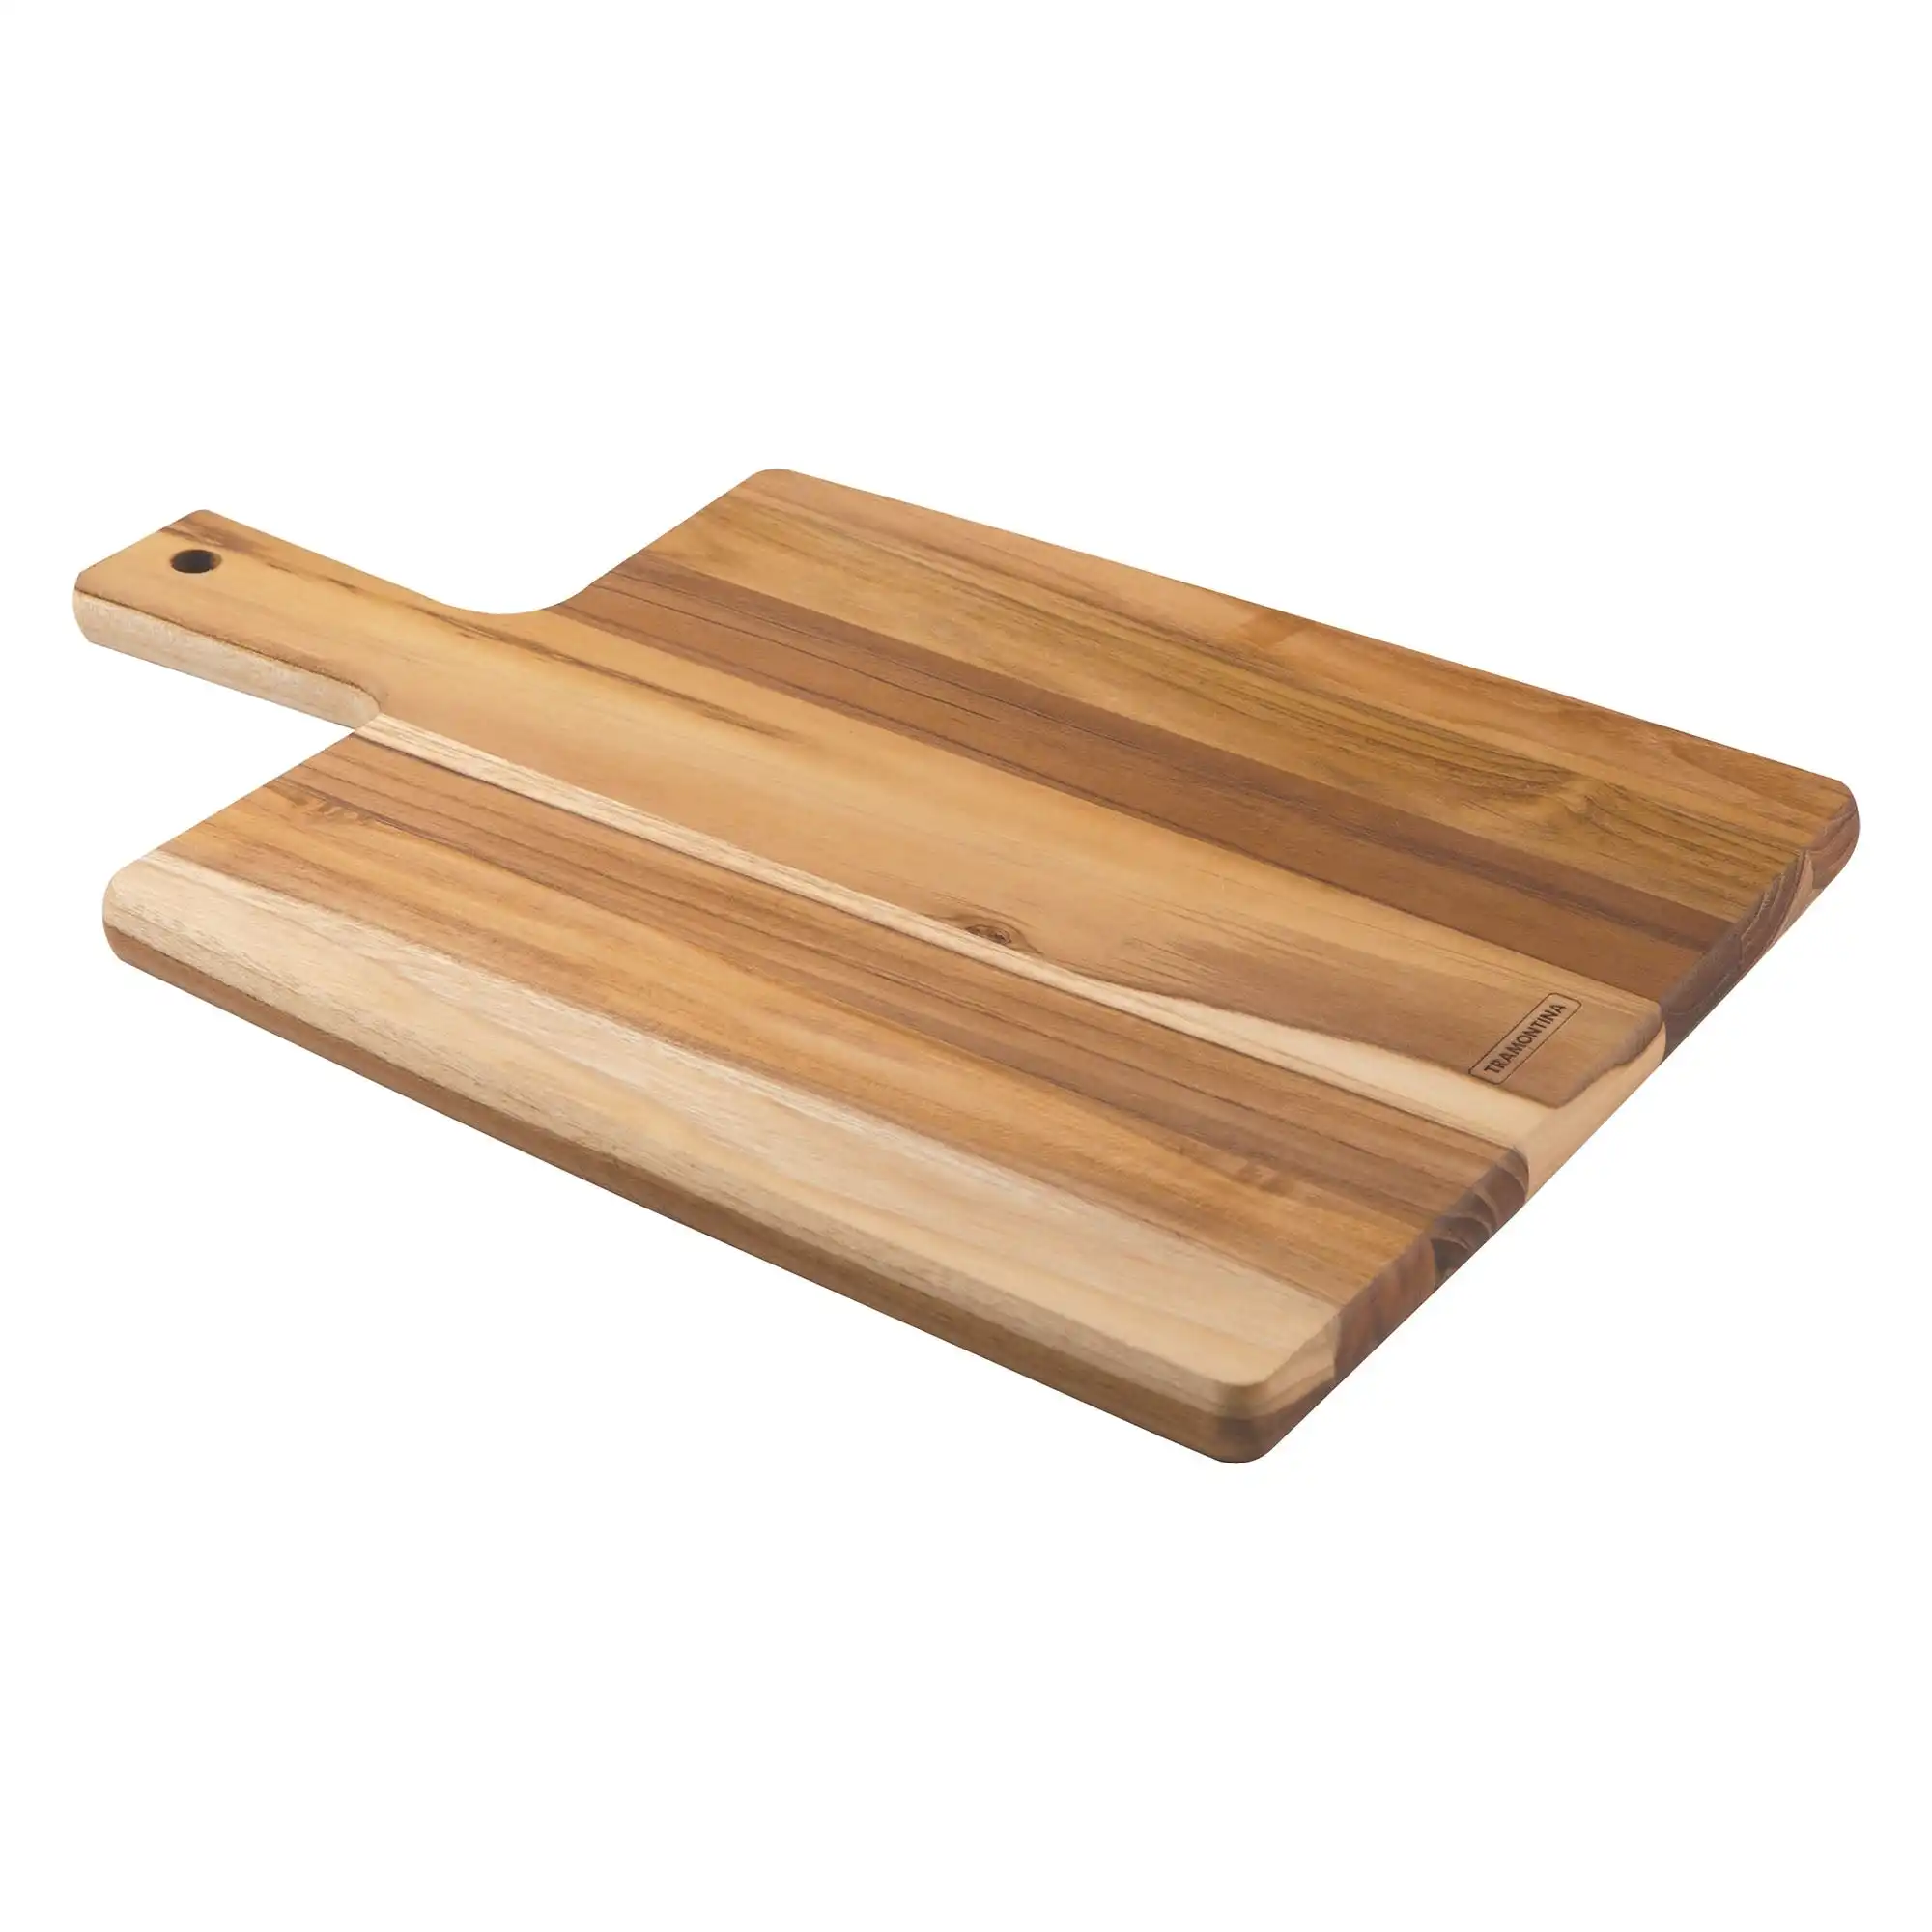 Tramontina Cutting Board Cutting Board With Handle, Teak Wood 400x270mm